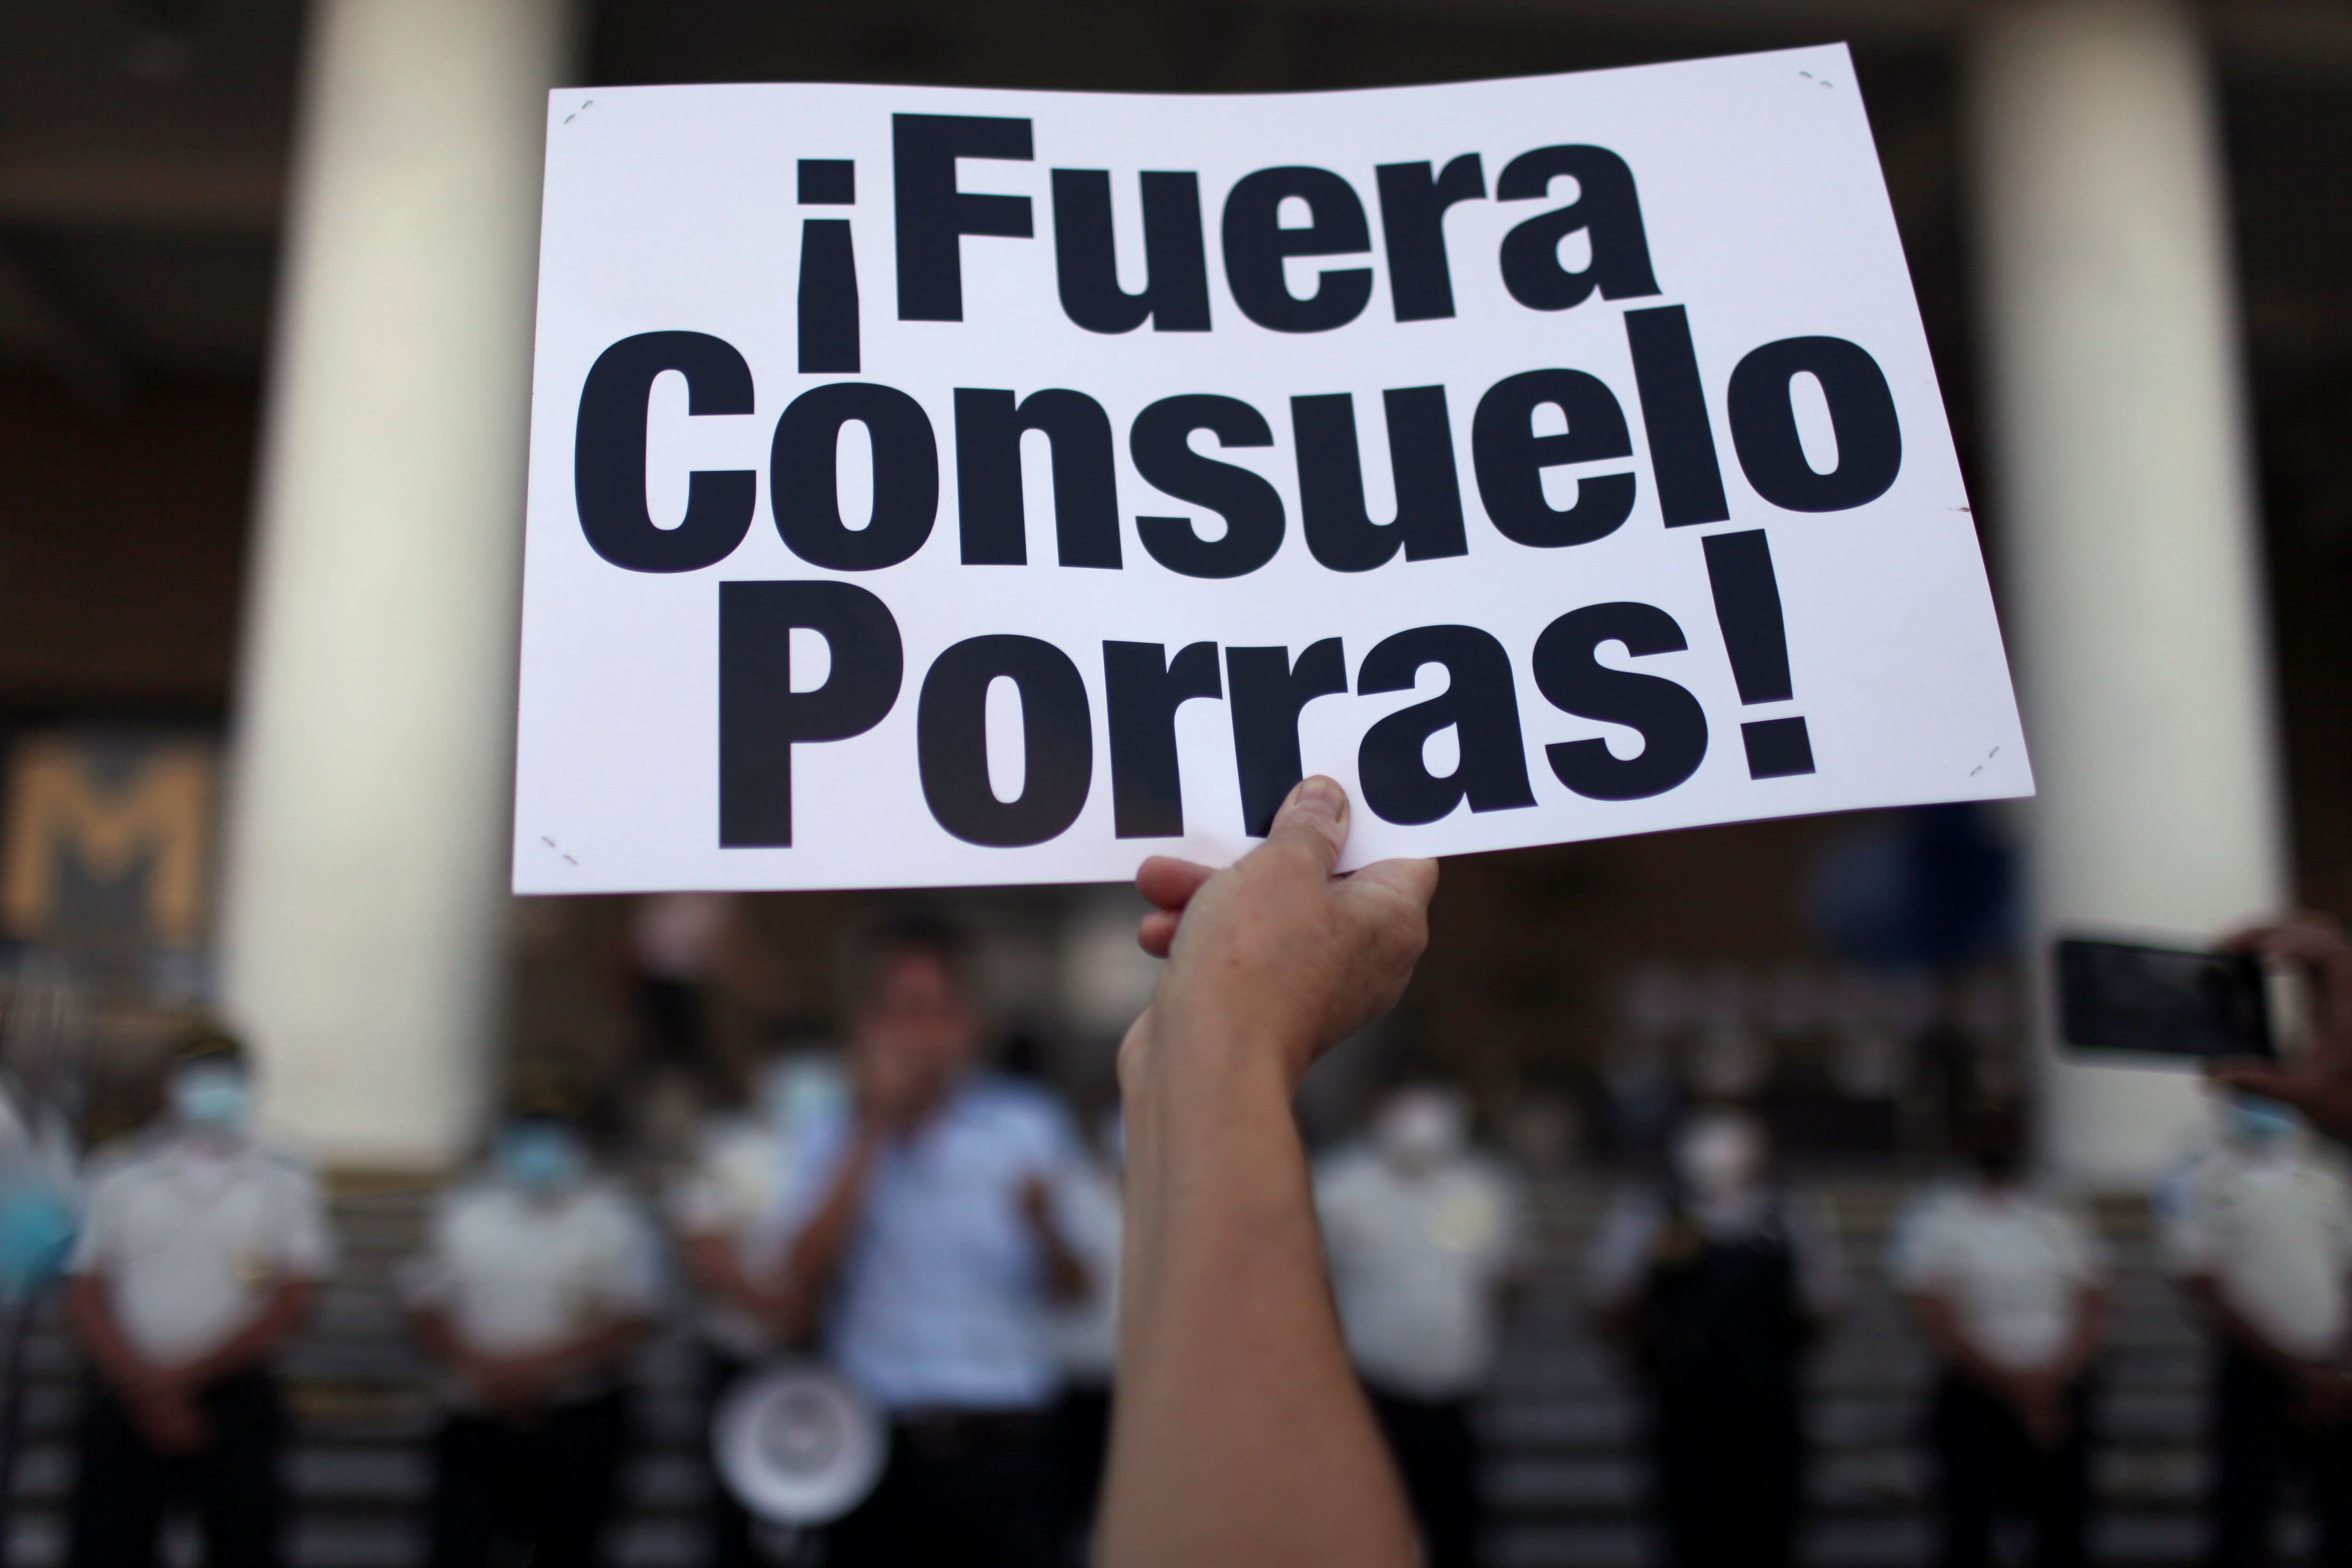 Un manifestante sostiene un cartel contra la fiscal general Consuelo Porras en Ciudad de Guatemala (REUTERS/Sandra Sebastian)